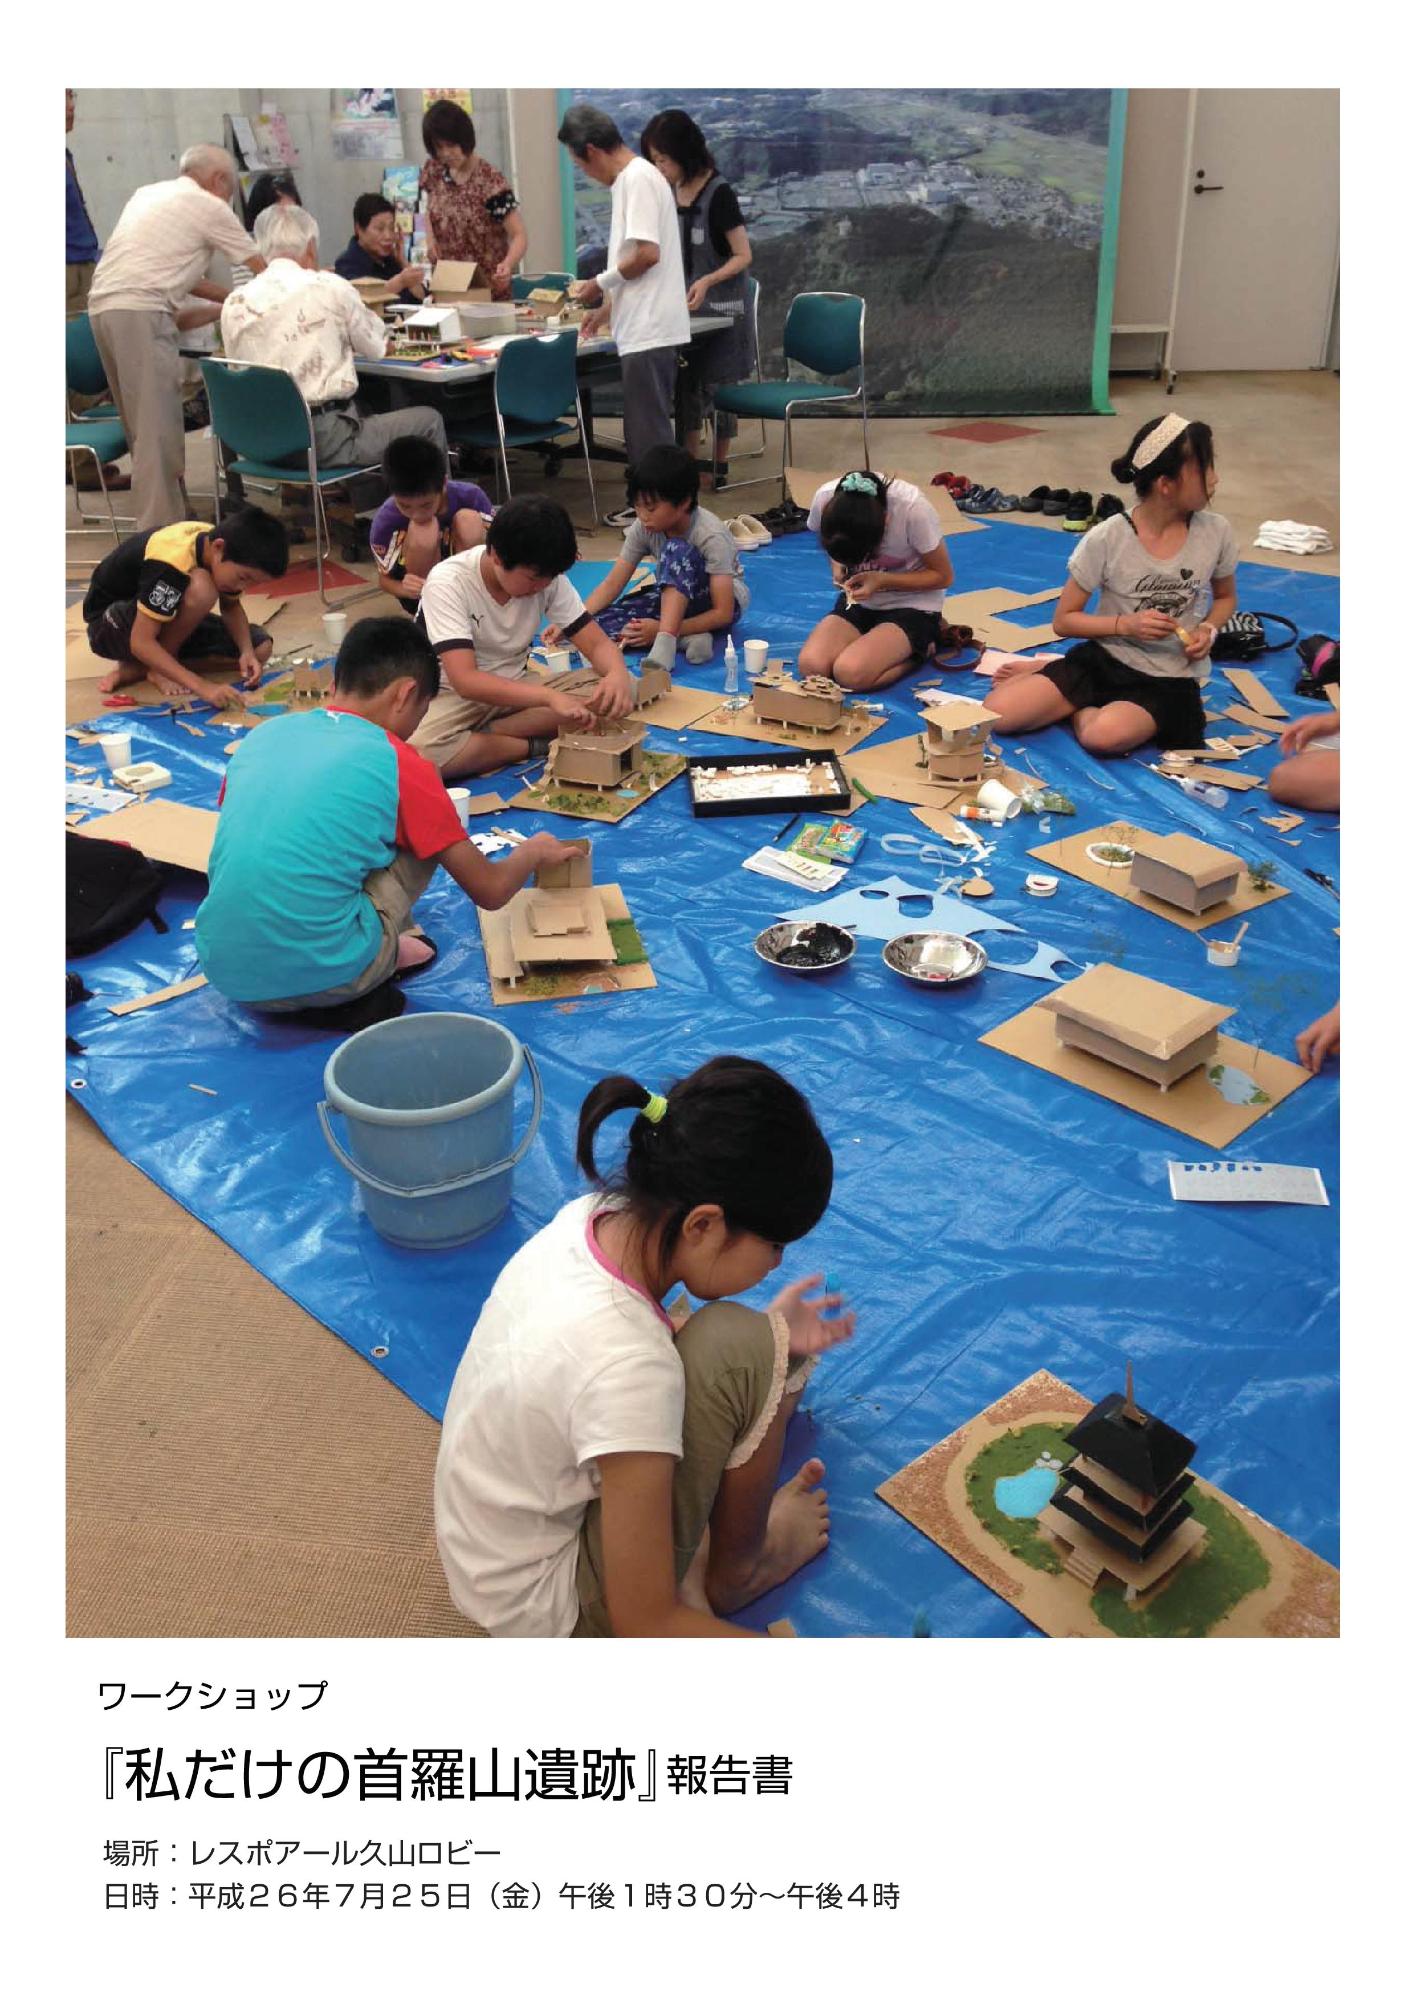 子供たちが段ボールや画用紙、絵の具を使って遺跡の模型を作っている写真が載っているワークショップ『私だけの首羅山遺跡』報告書の表紙